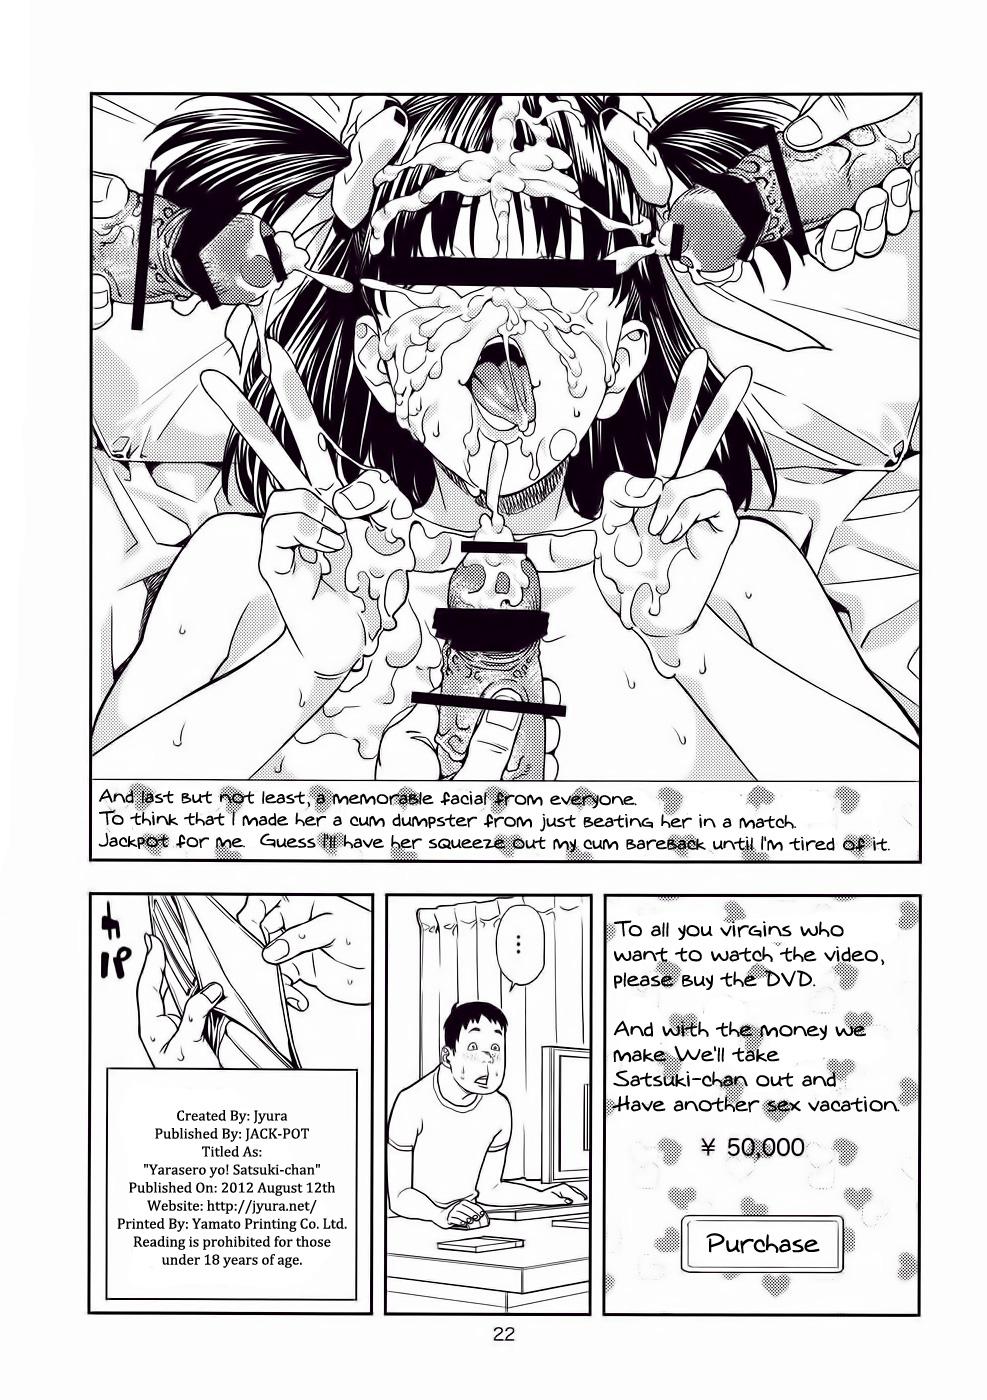 Squirting Yarasero yo! Satsuki-chan - Tsukiatte yo satsuki-chan Free - Page 21